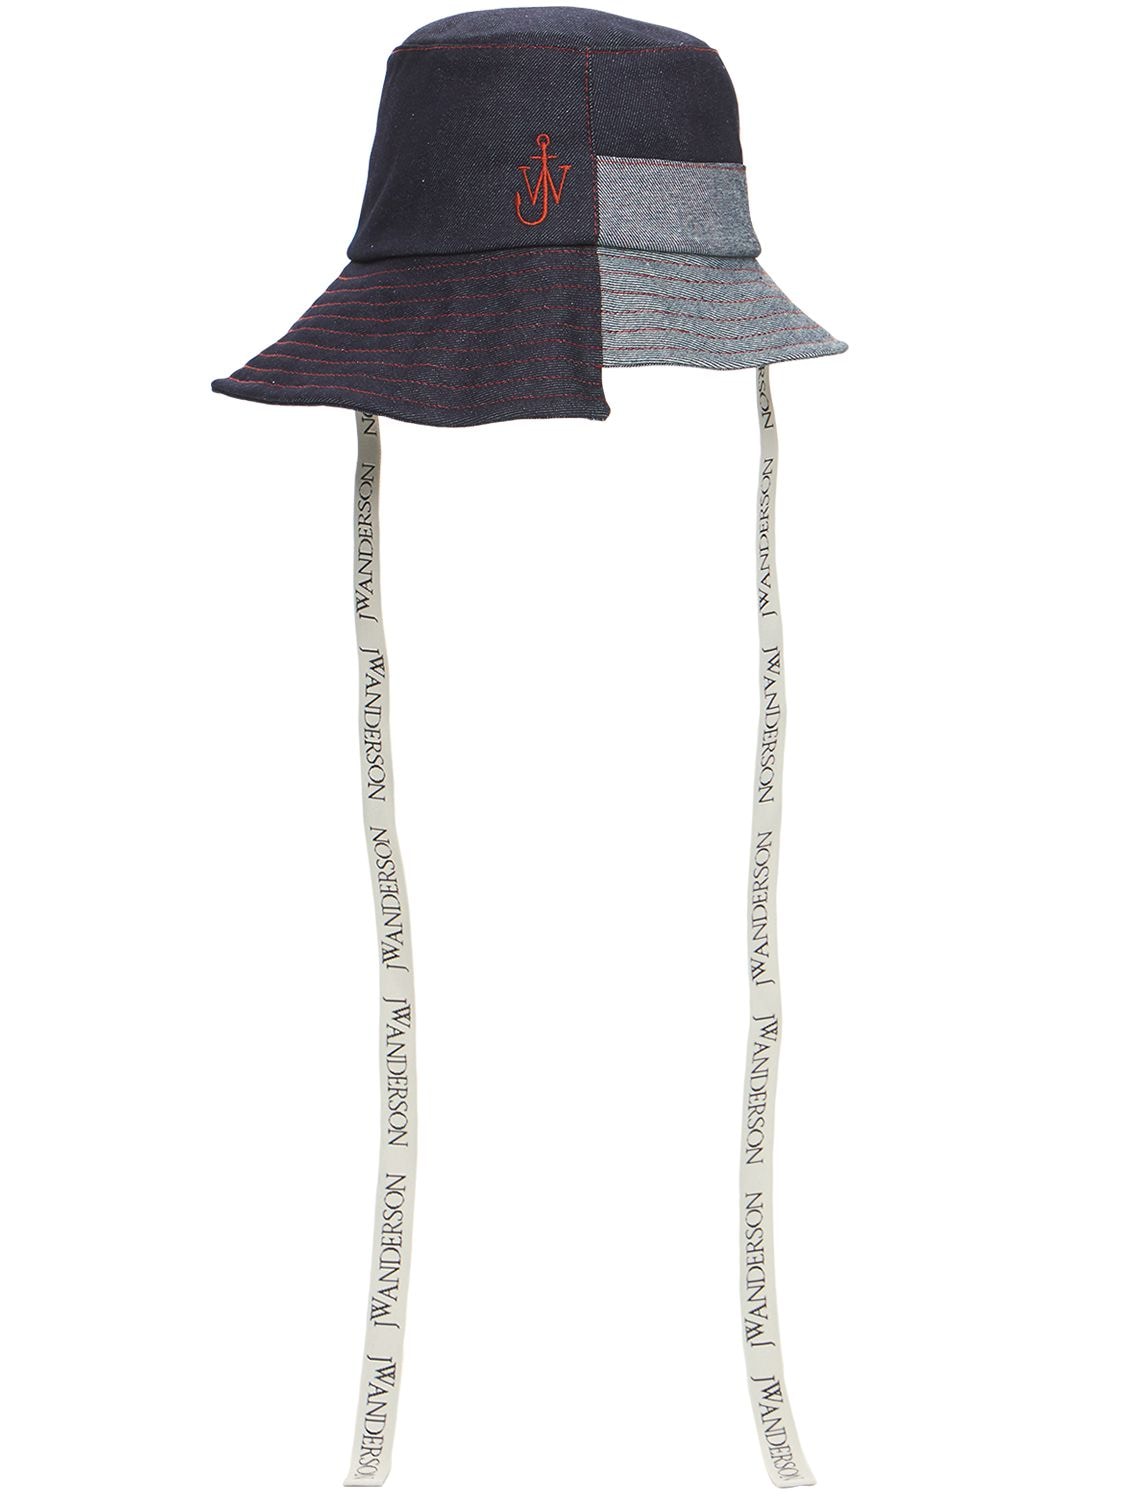 JW ANDERSON Recycled Denim Asymmetric Bucket Hat